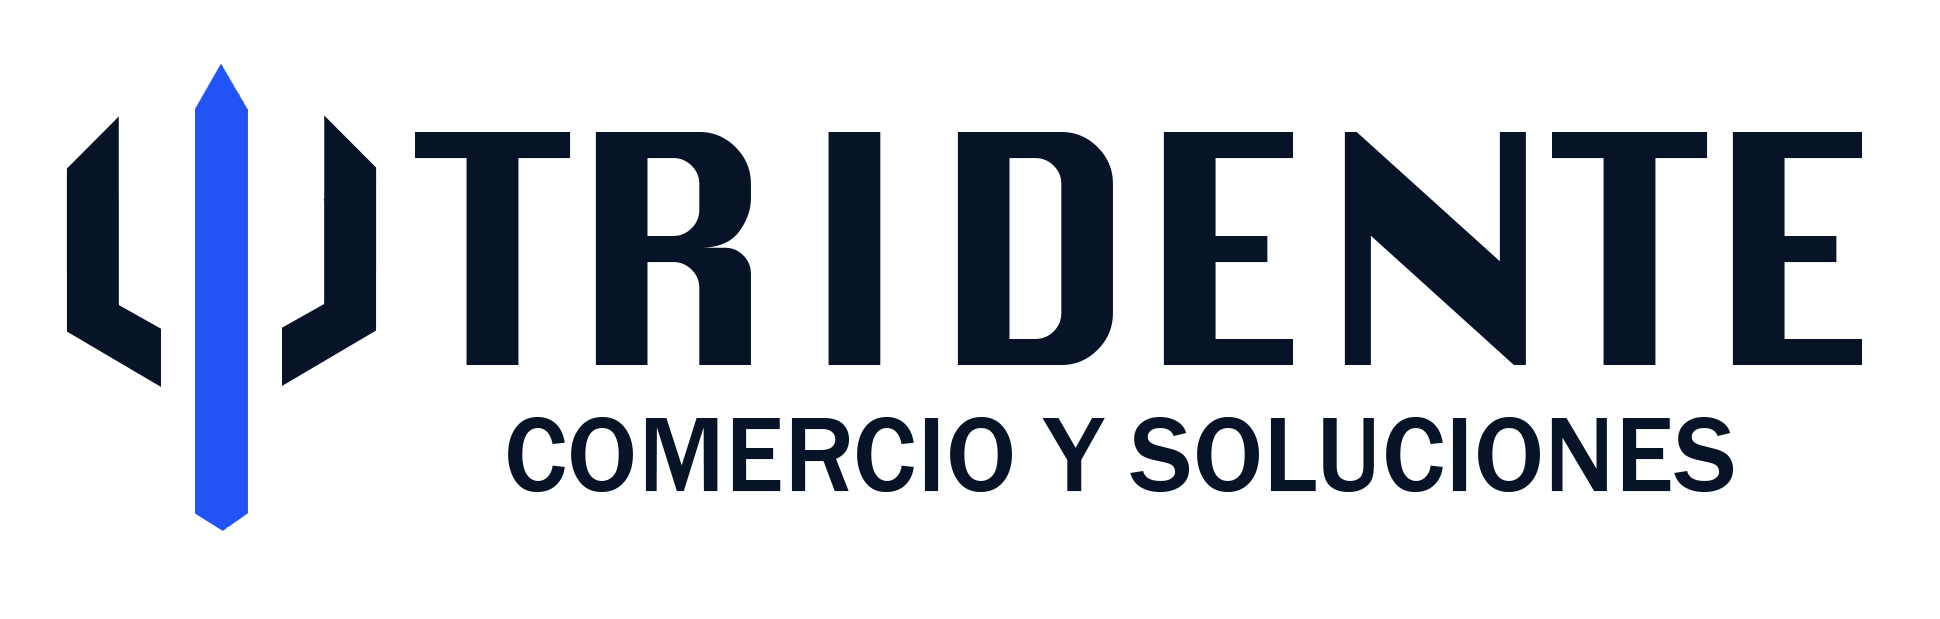 TRIDENTE PERU - COMERCIO Y SOLUCIONES